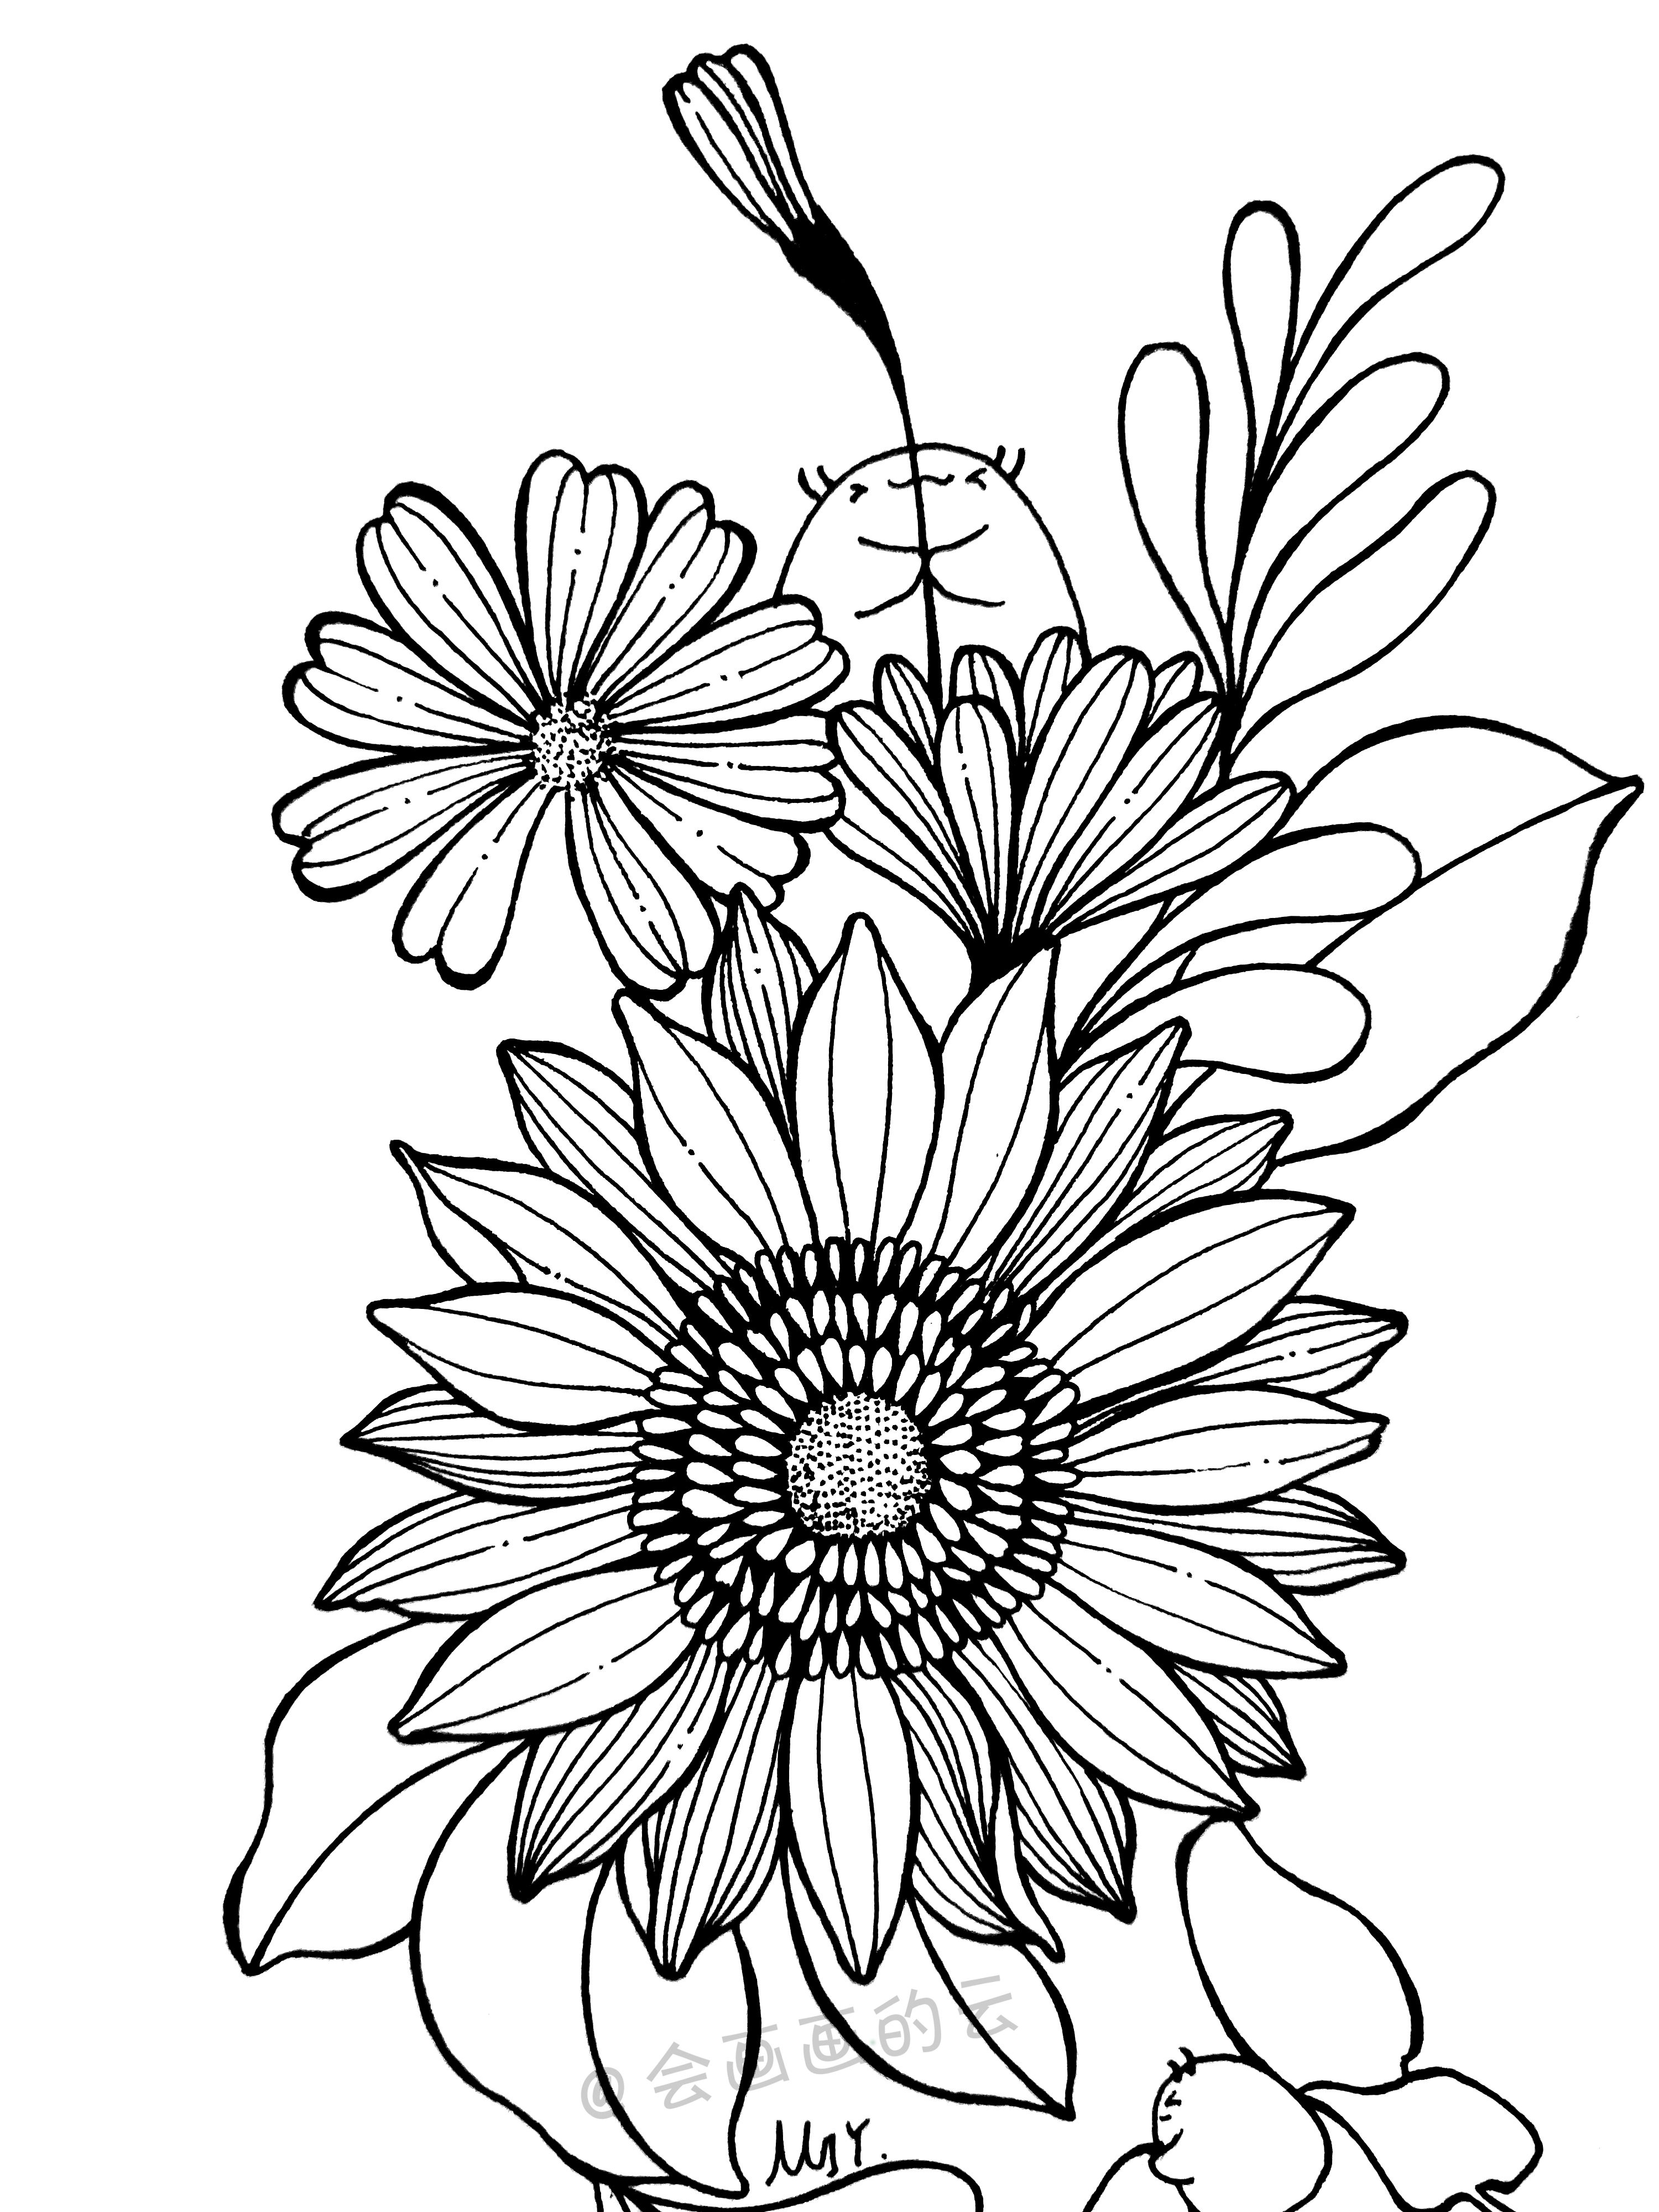 最常见的工具画出好看的花朵，零基础也可以画的简笔画，喜欢吗？